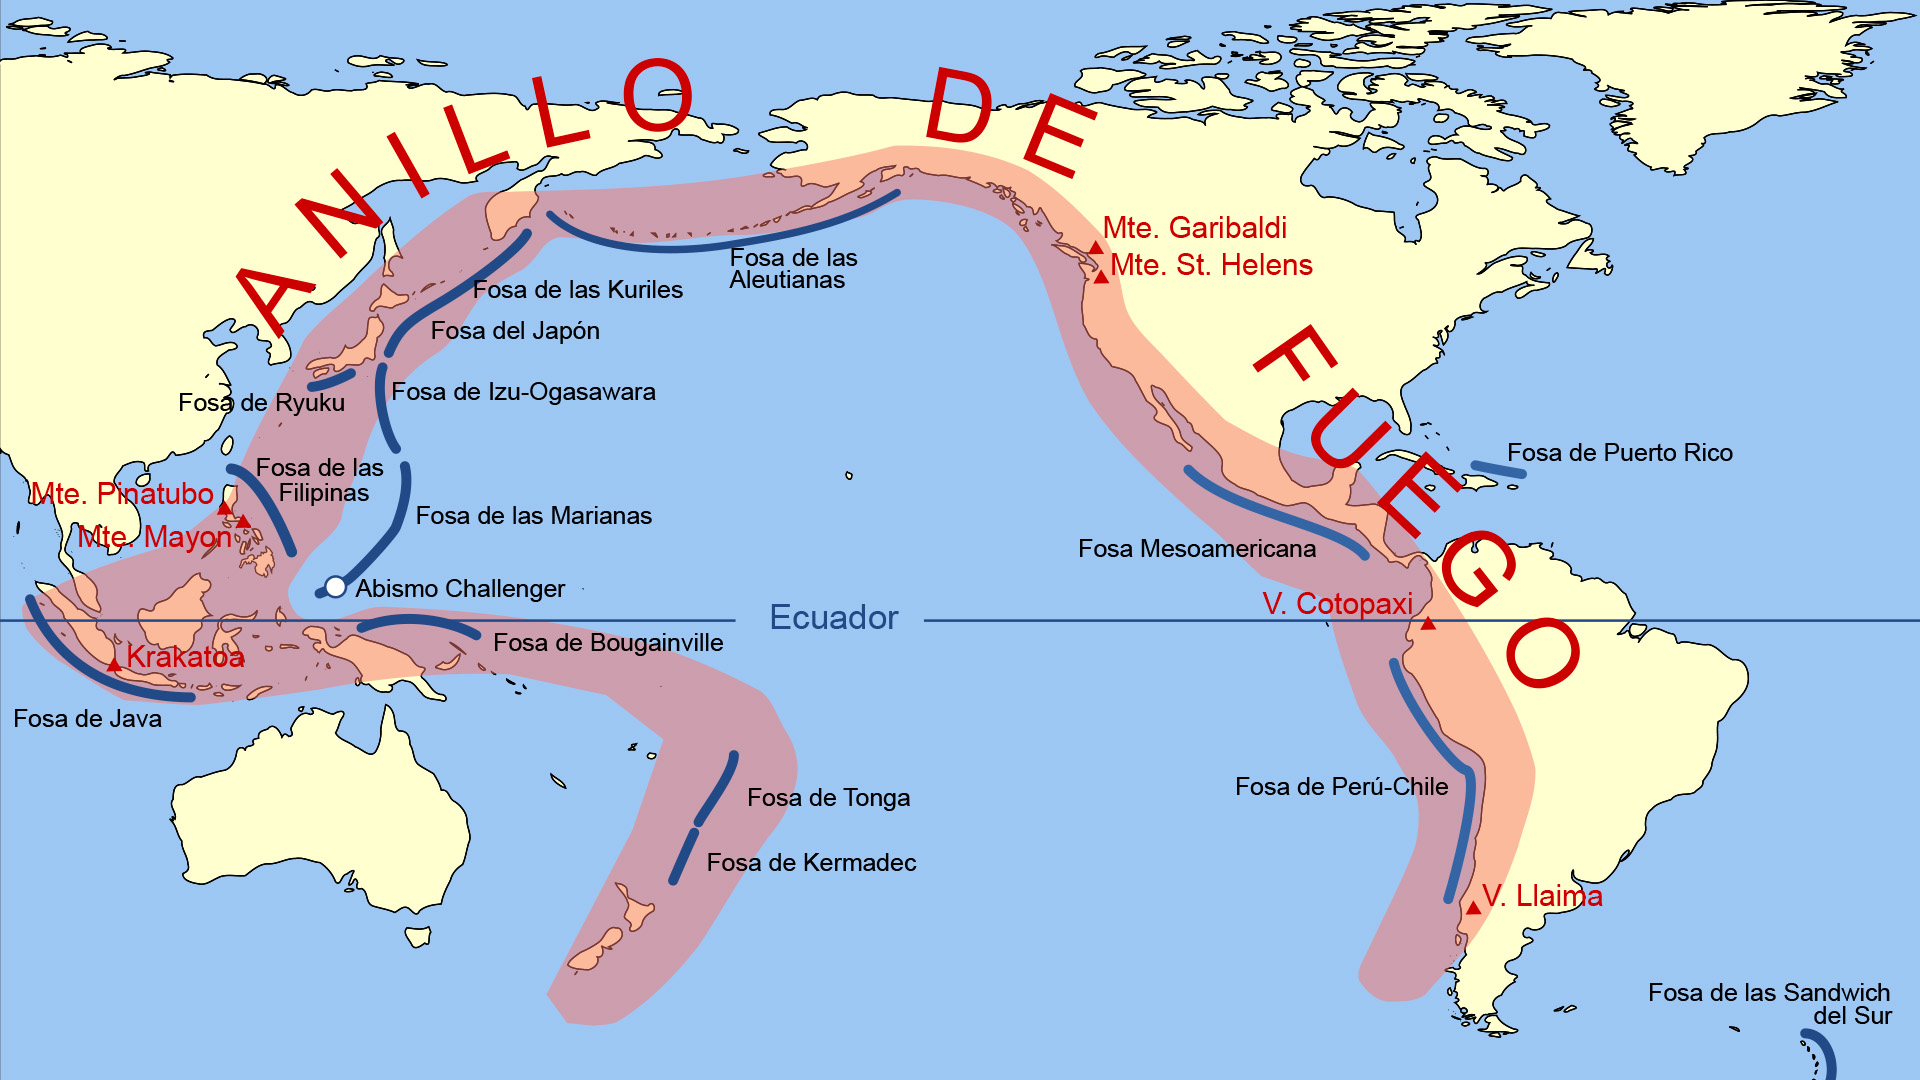  El Anillo de Fuego del Pacífico, la región que registra más actividad sísmica y volcánica en el mundo (Archivo)